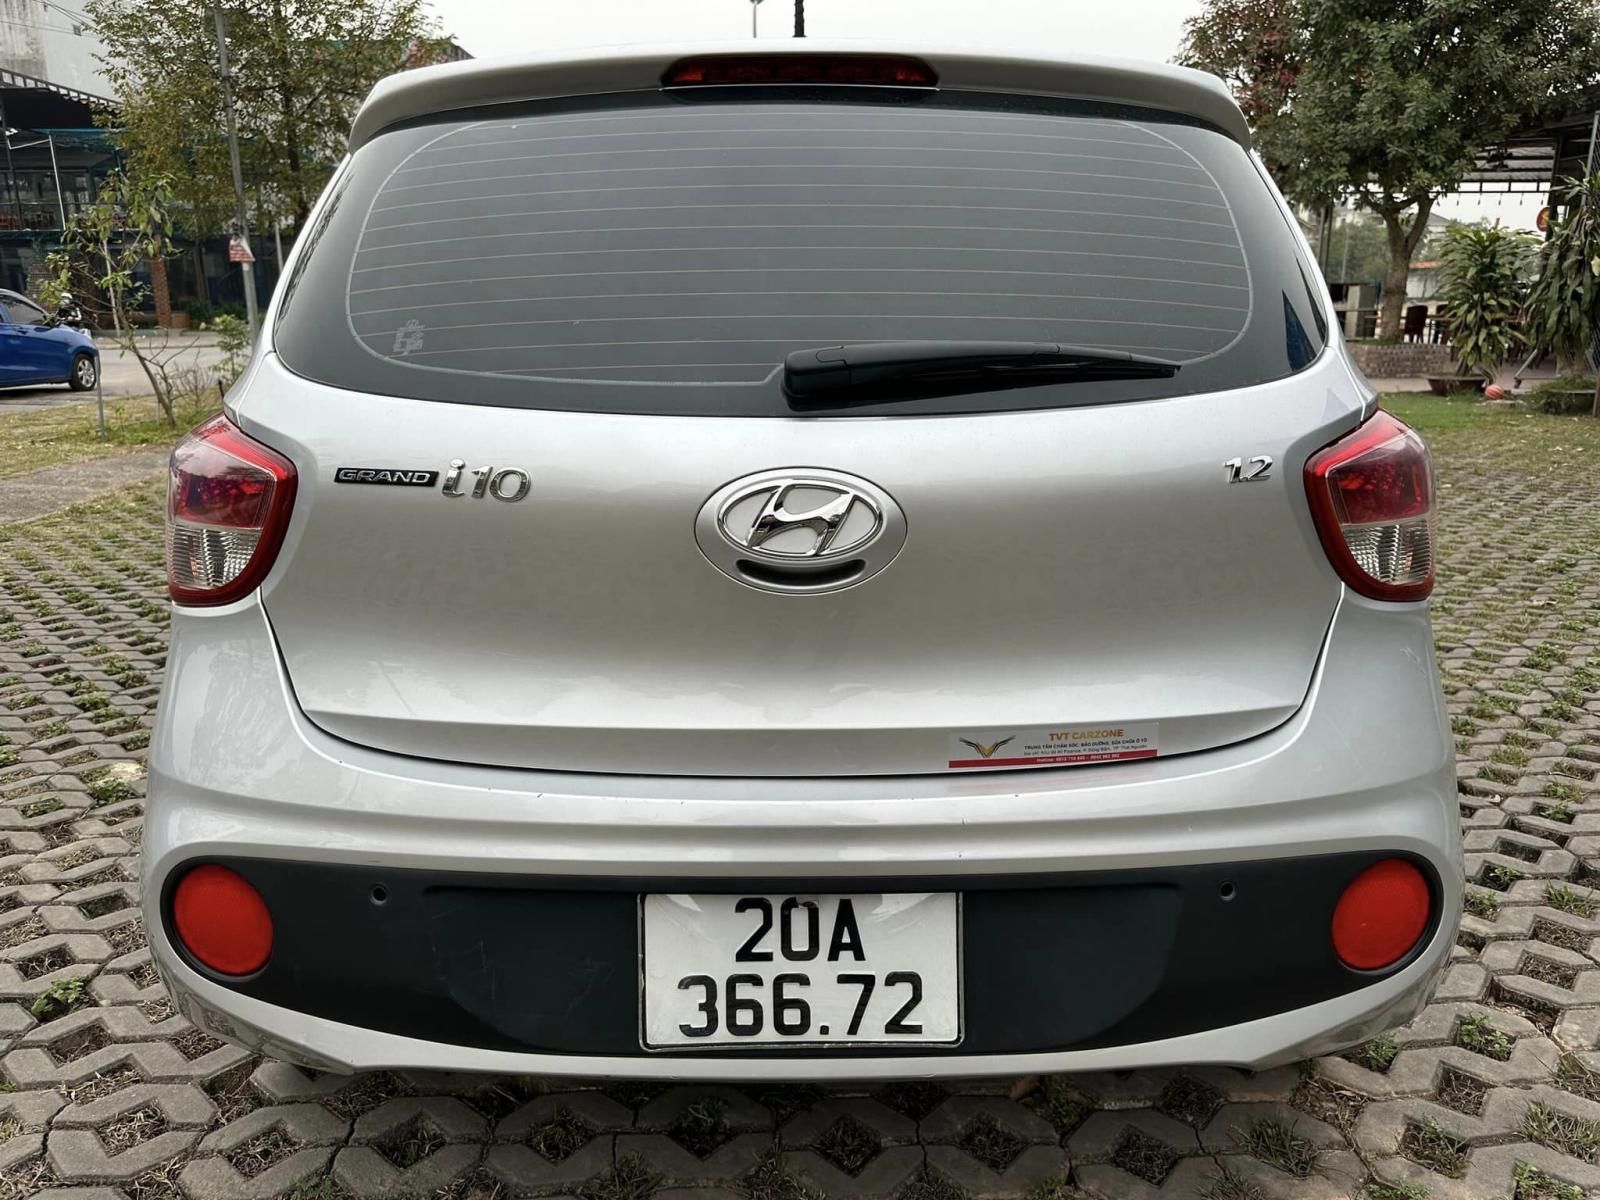 Hyundai i10 2019 - Hyundai 2019 tại Thái Nguyên